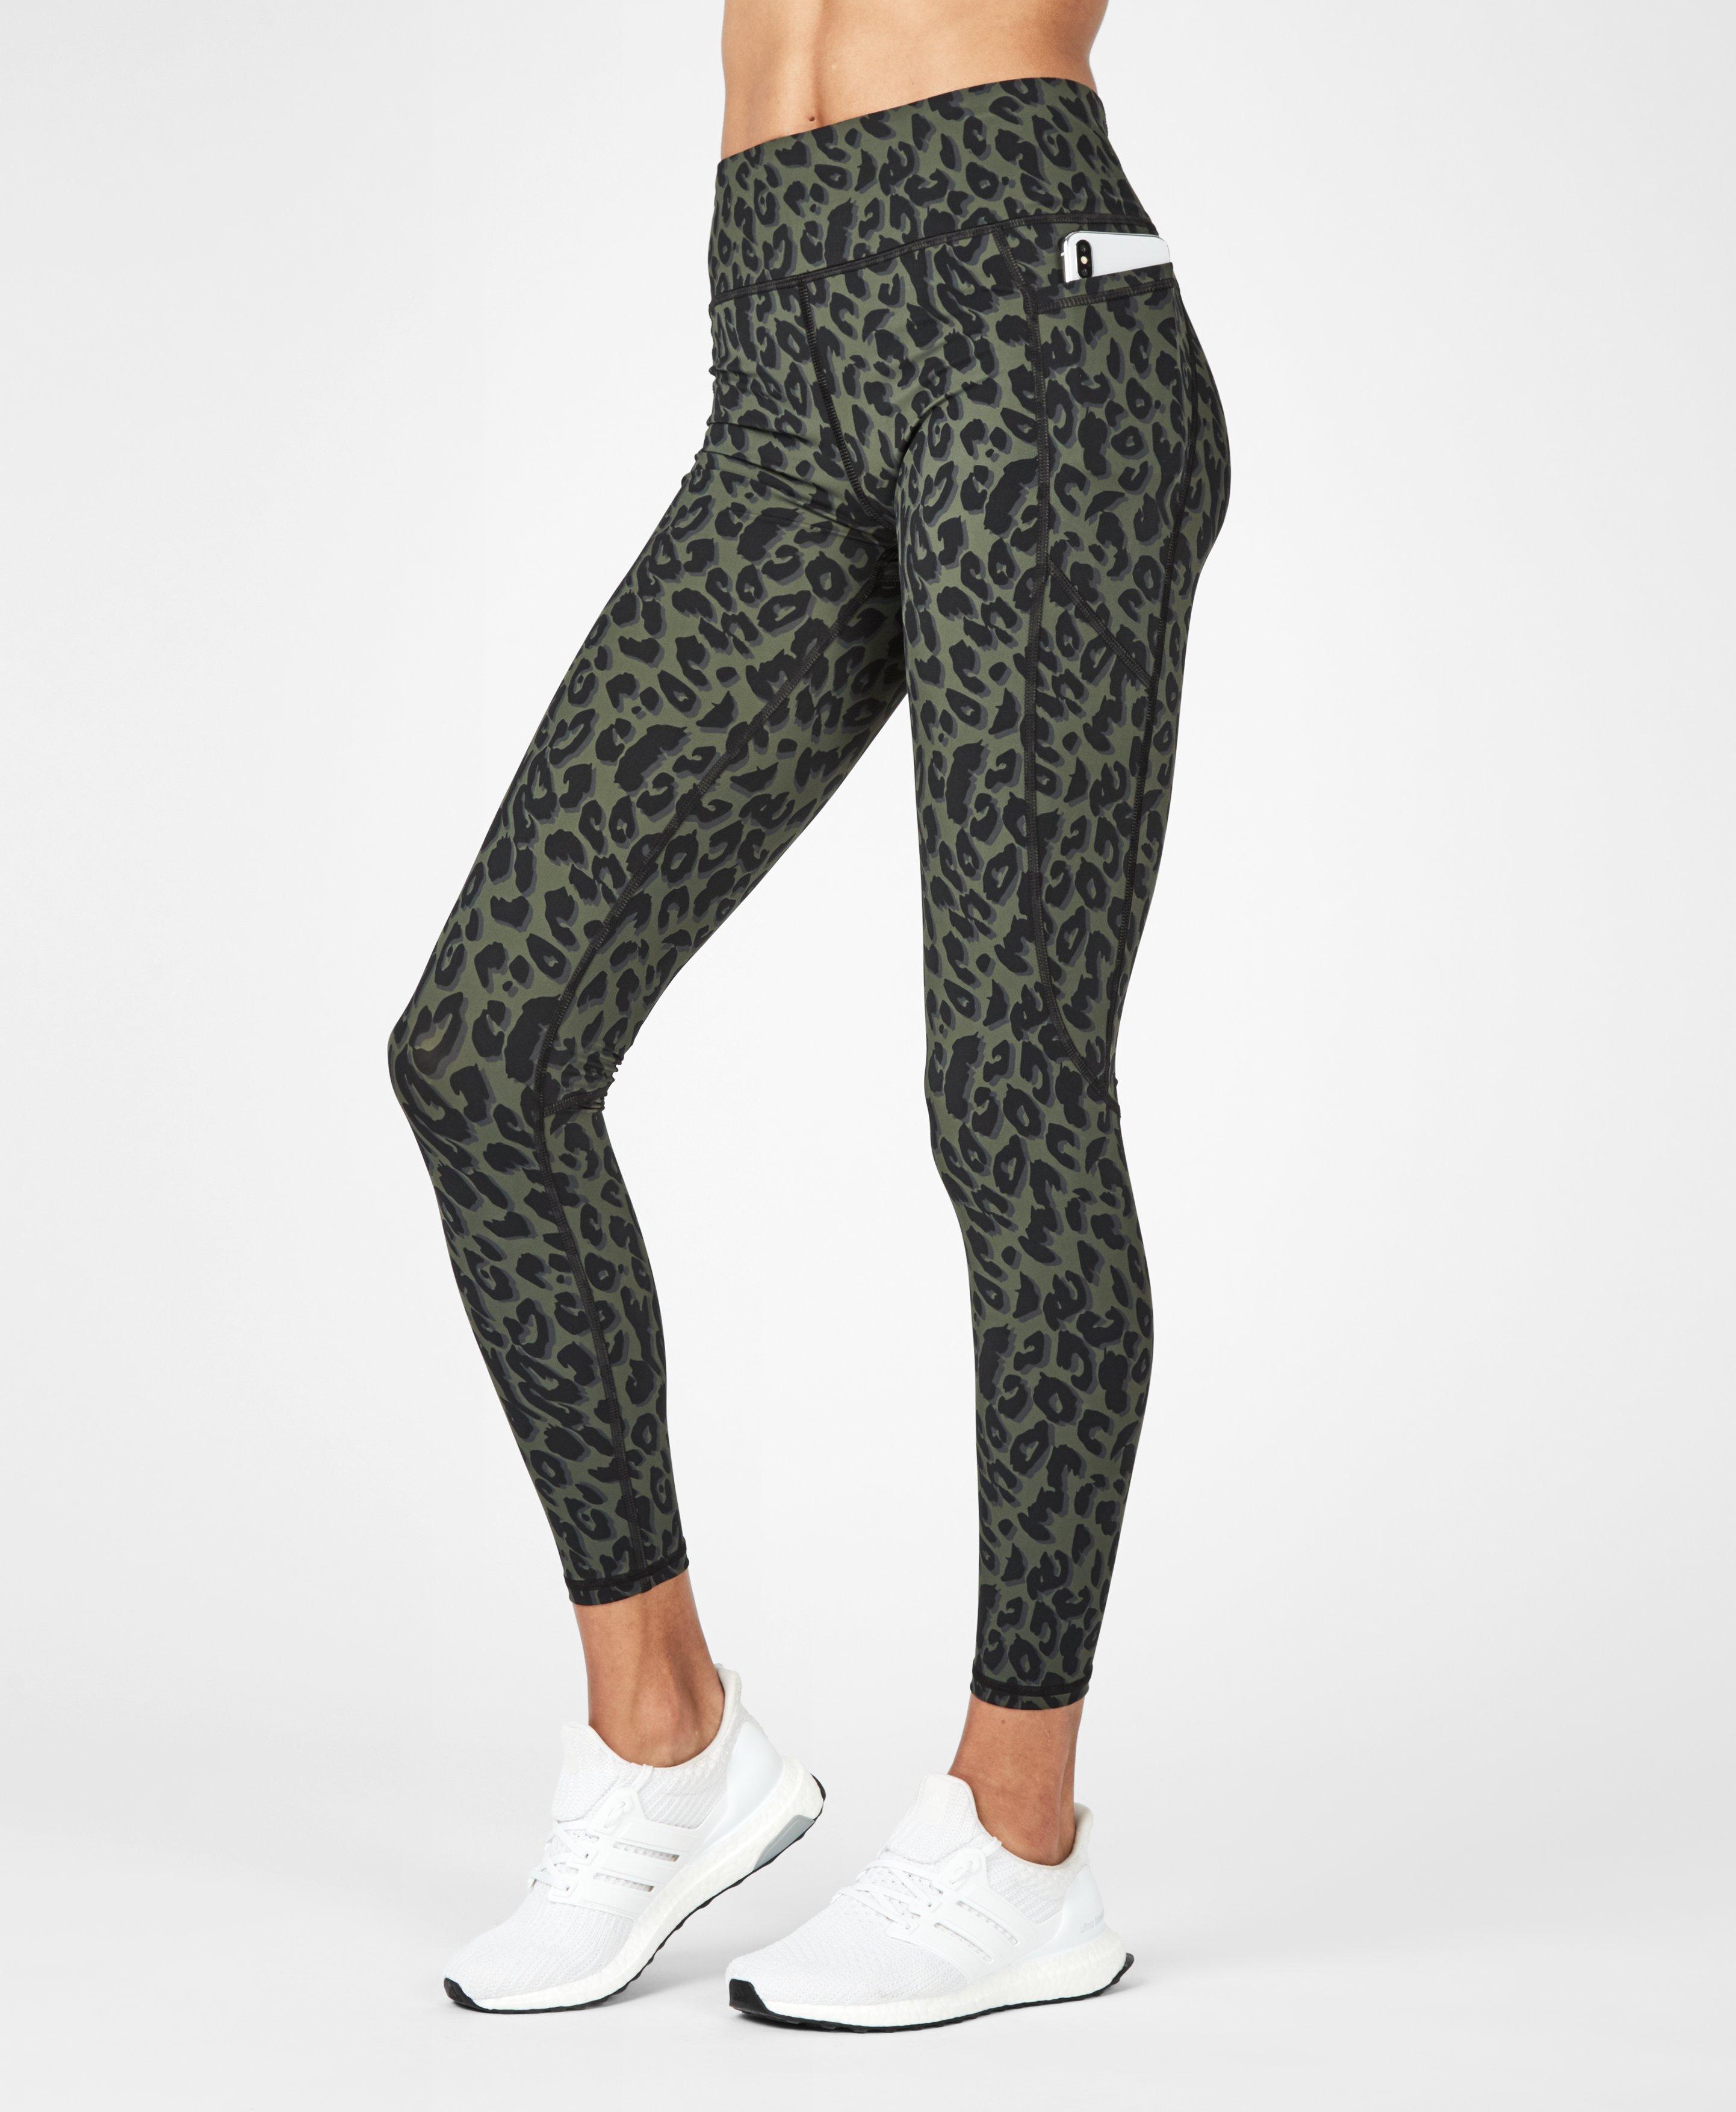 leopard sports leggings